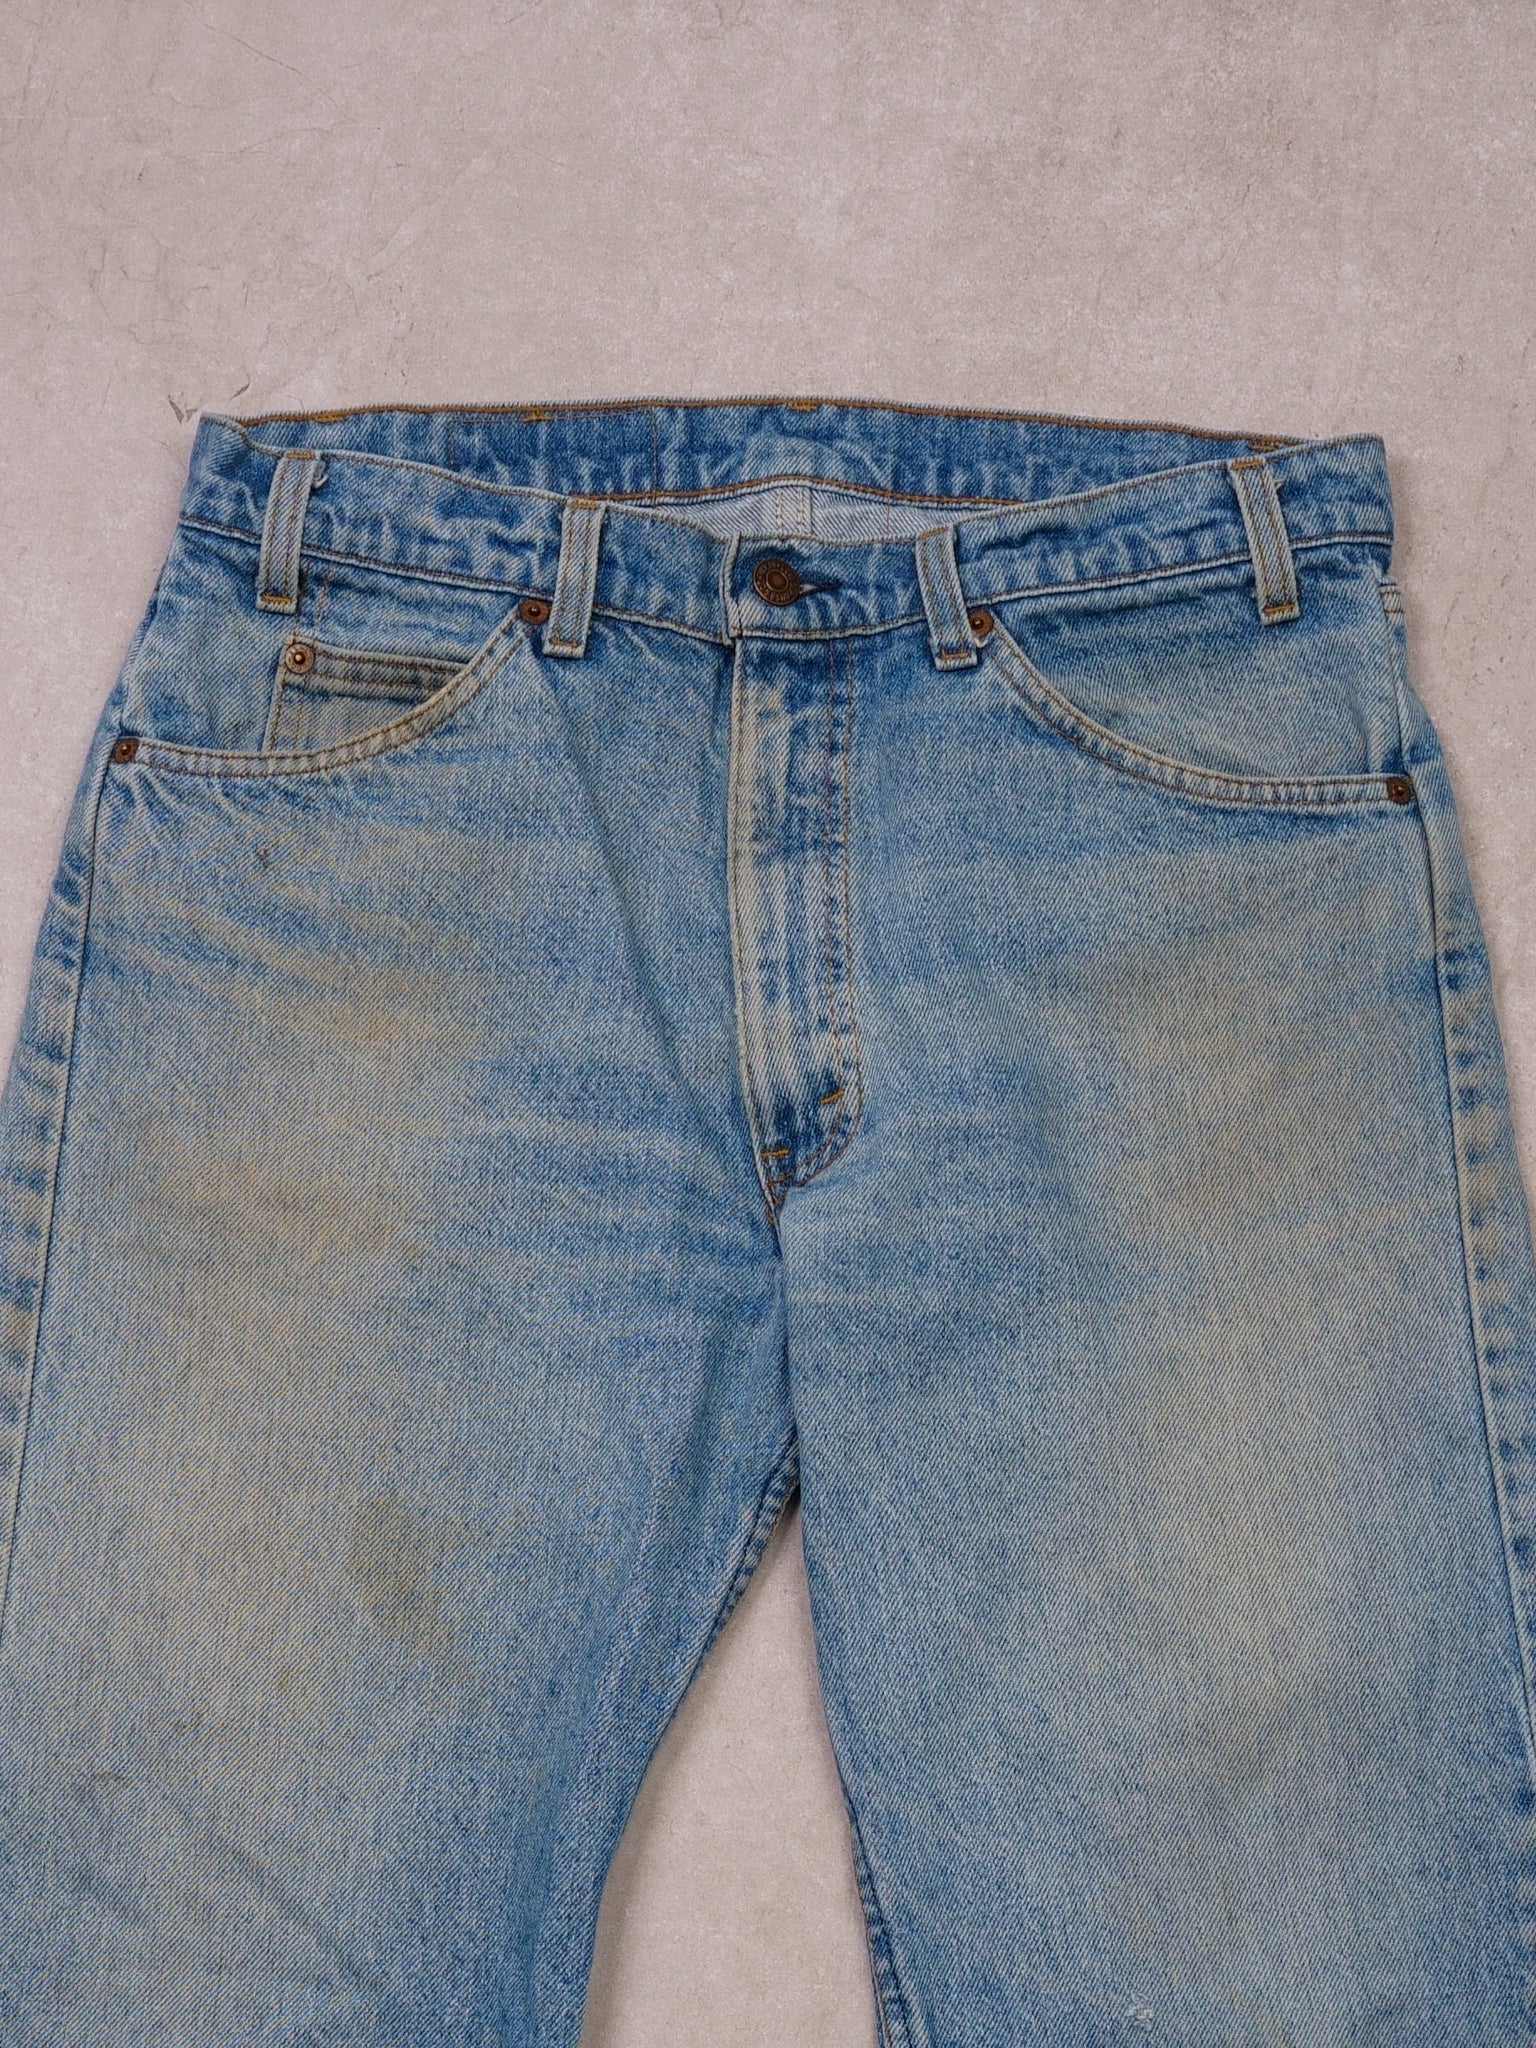 Vintage 70s Light Wash Levi's Original Fit Denim Jeans (32x28)